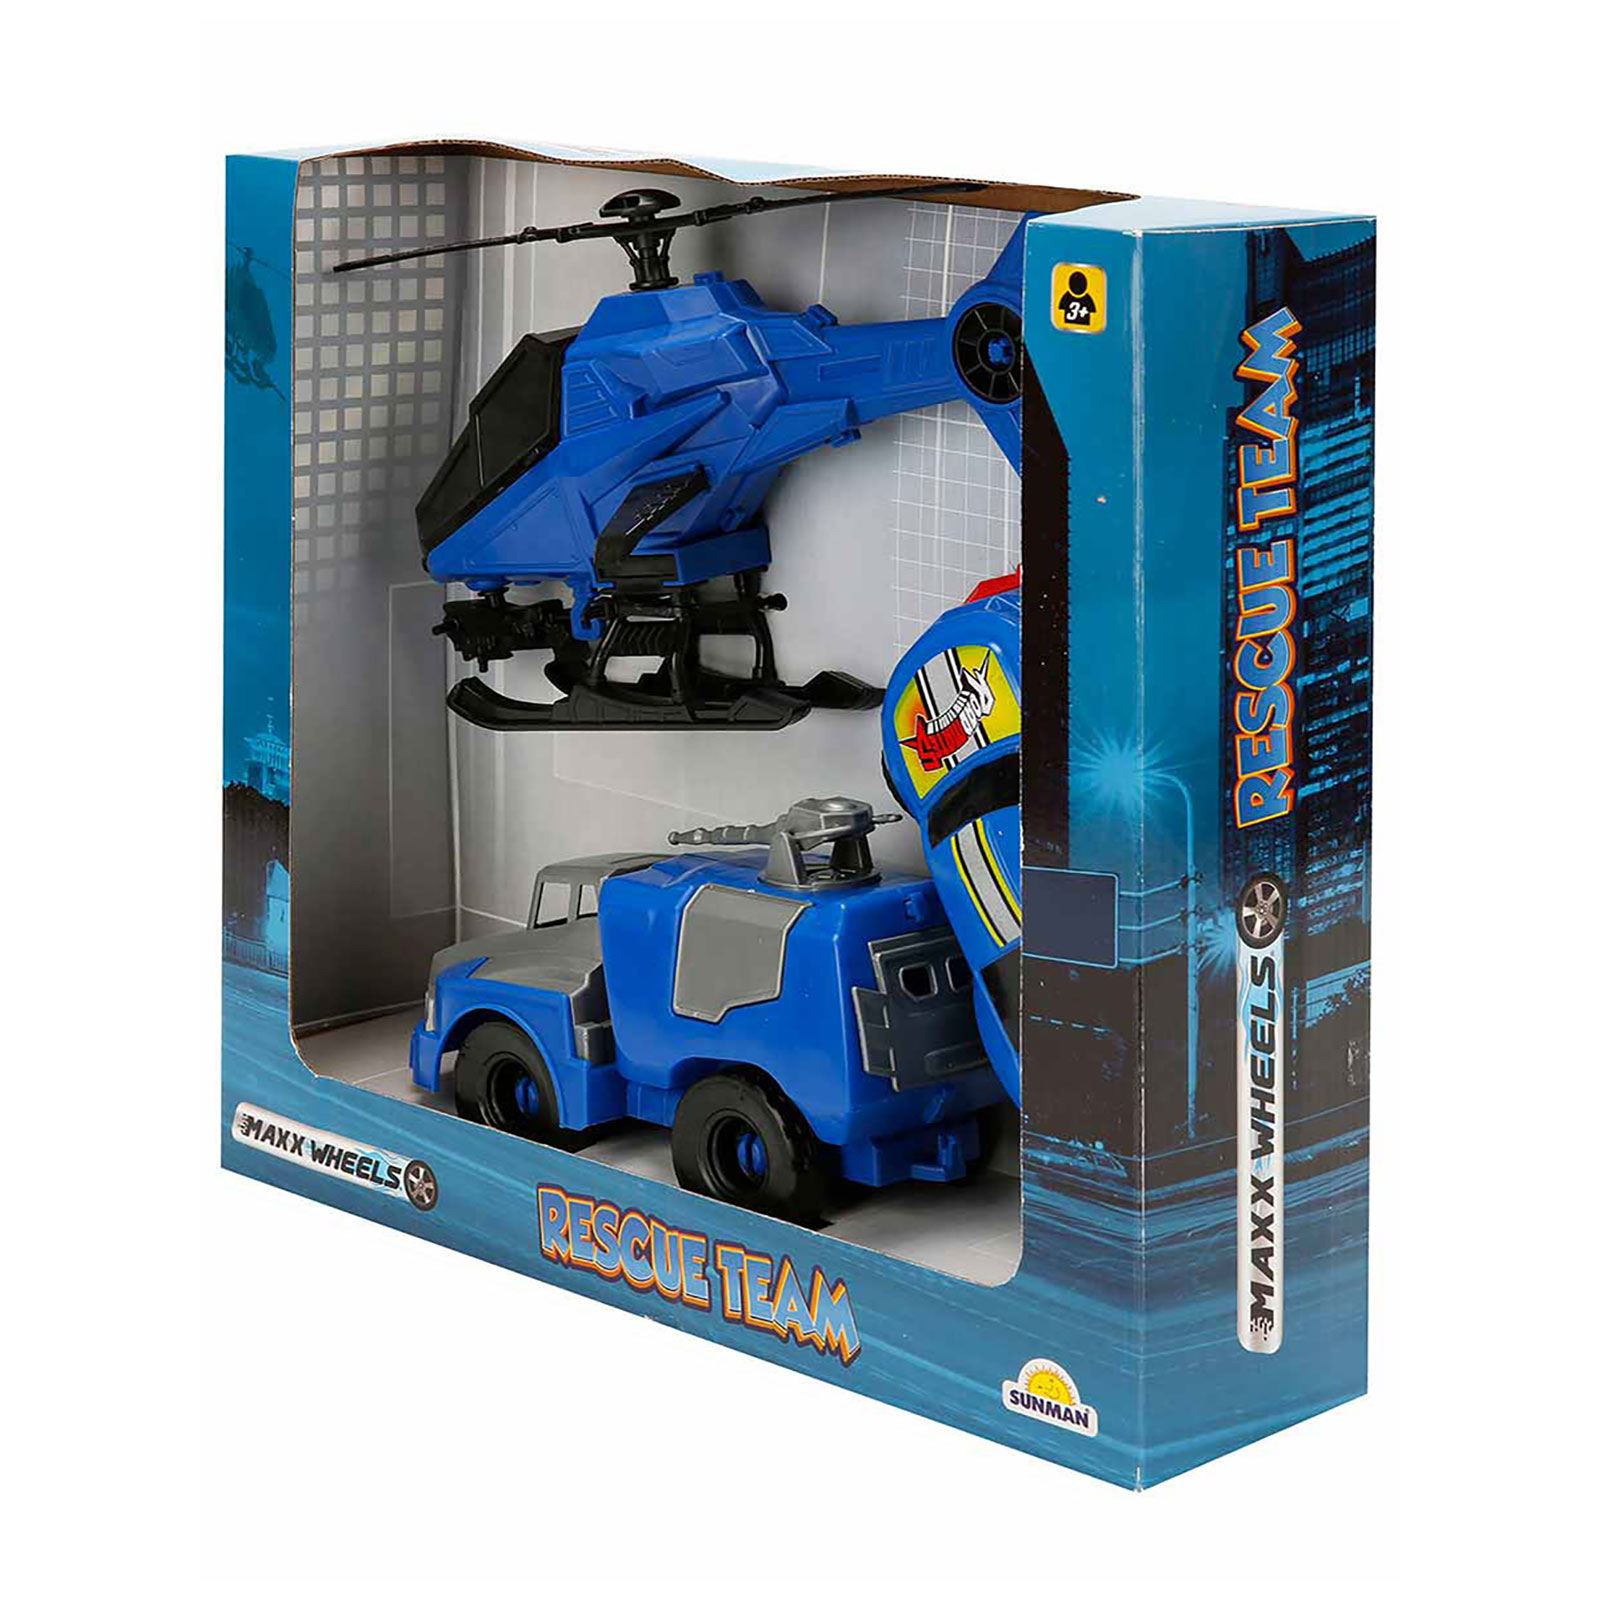 Sunman Maxx Wheels Kurtarma Araçları Oyun Seti Saks Mavisi